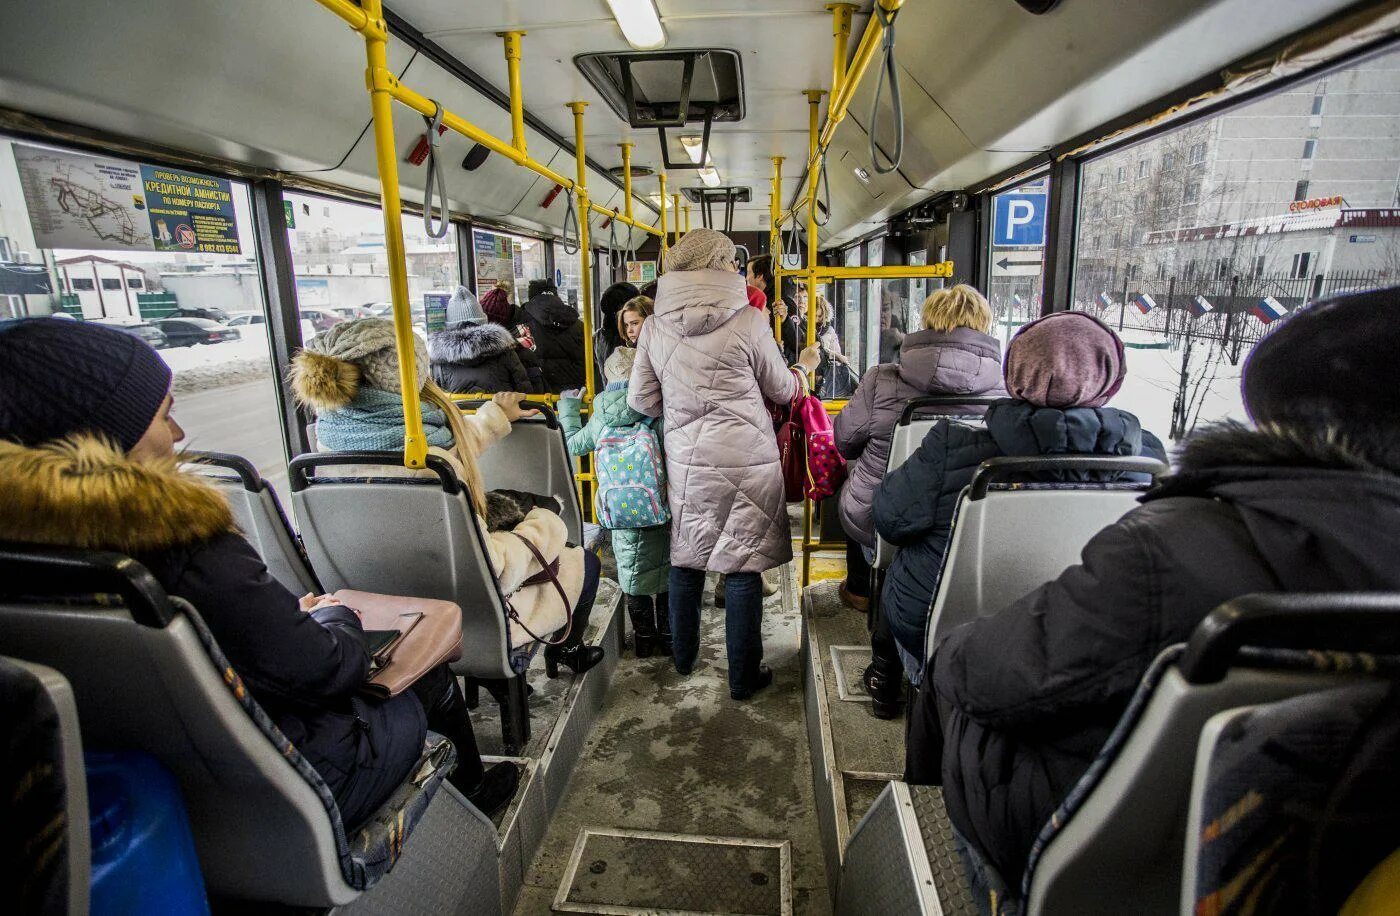 Пассажиры в транспорте. Общественный транспорт внутри. Автобус внутри с людьми. Пассажиры общественного транспорта.